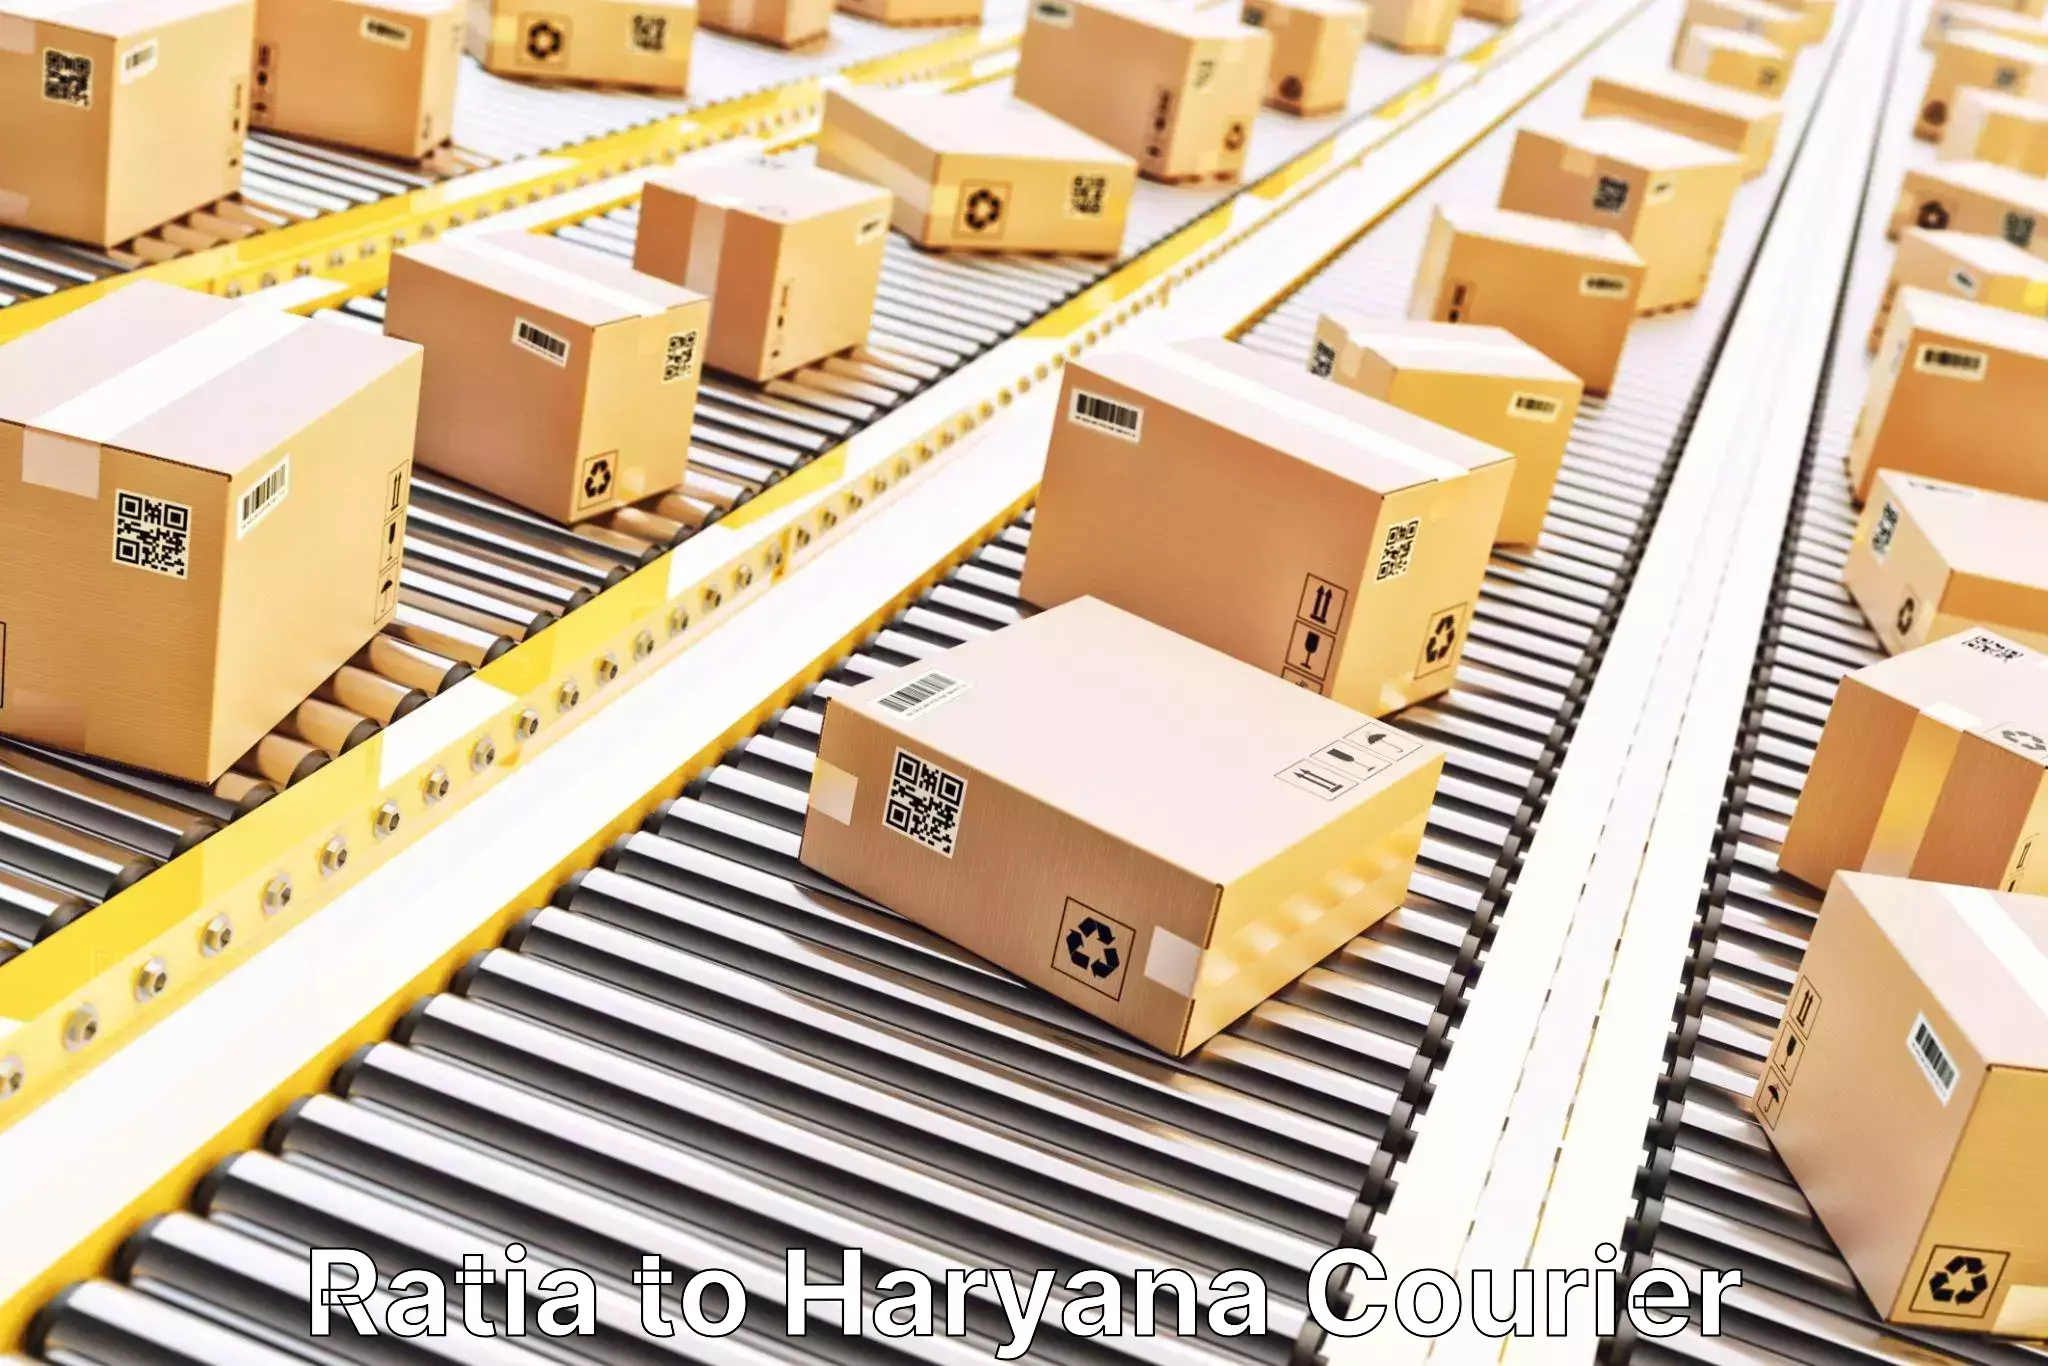 Door-to-door shipment Ratia to Haryana